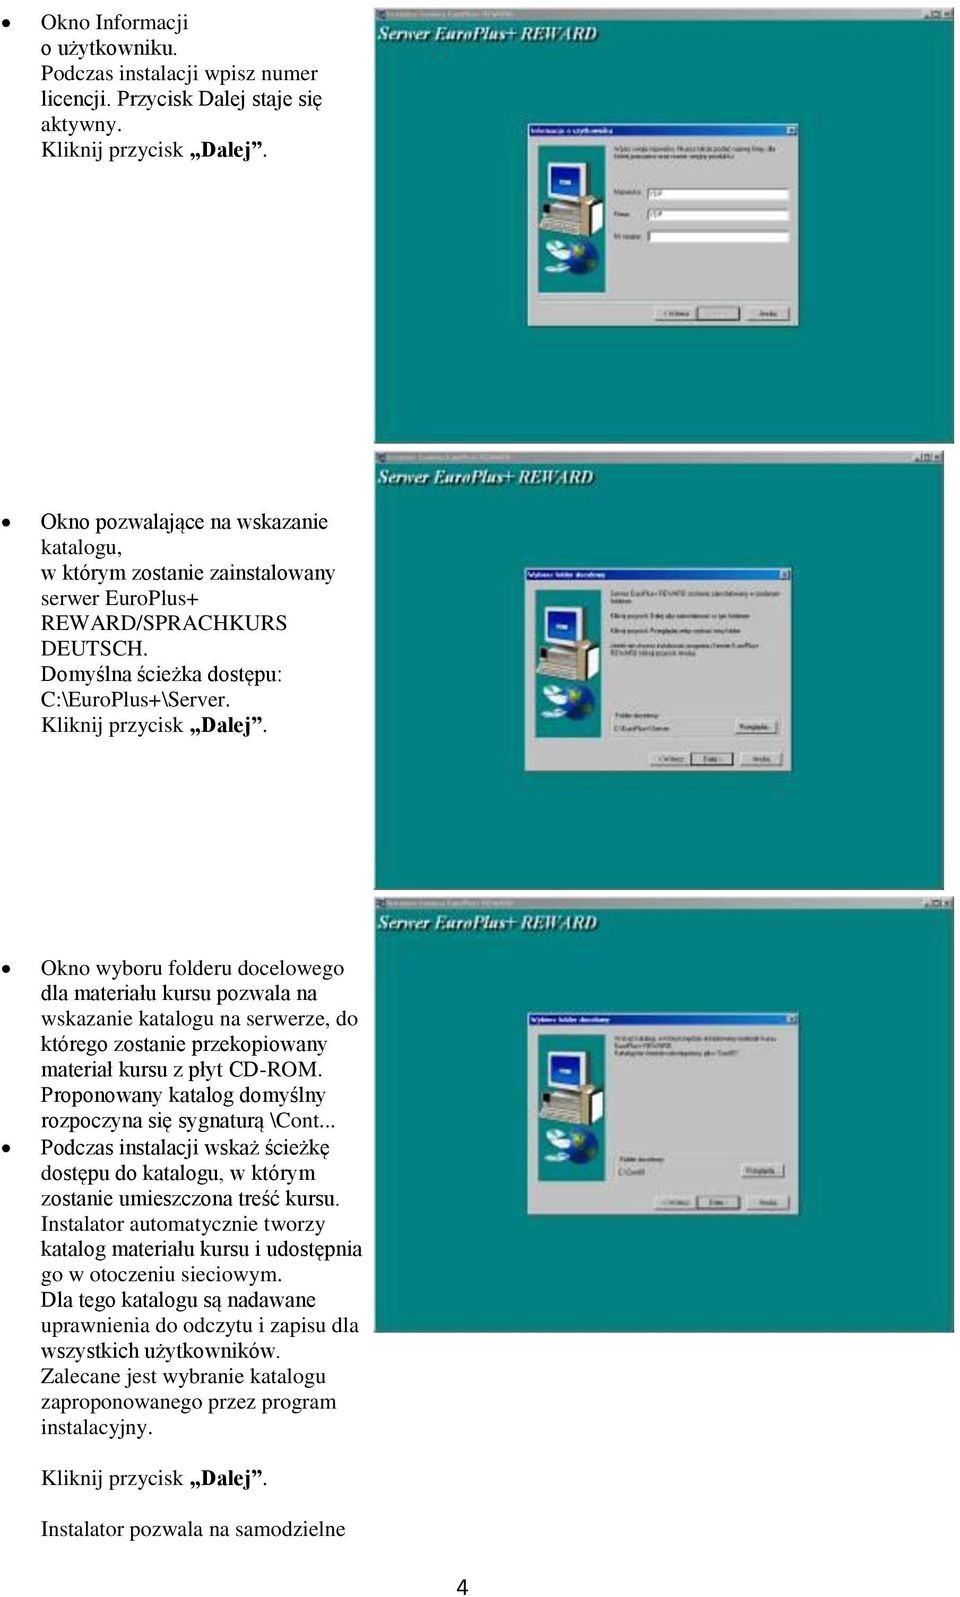 Okno wyboru folderu docelowego dla materiału kursu pozwala na wskazanie katalogu na serwerze, do którego zostanie przekopiowany materiał kursu z płyt CD-ROM.